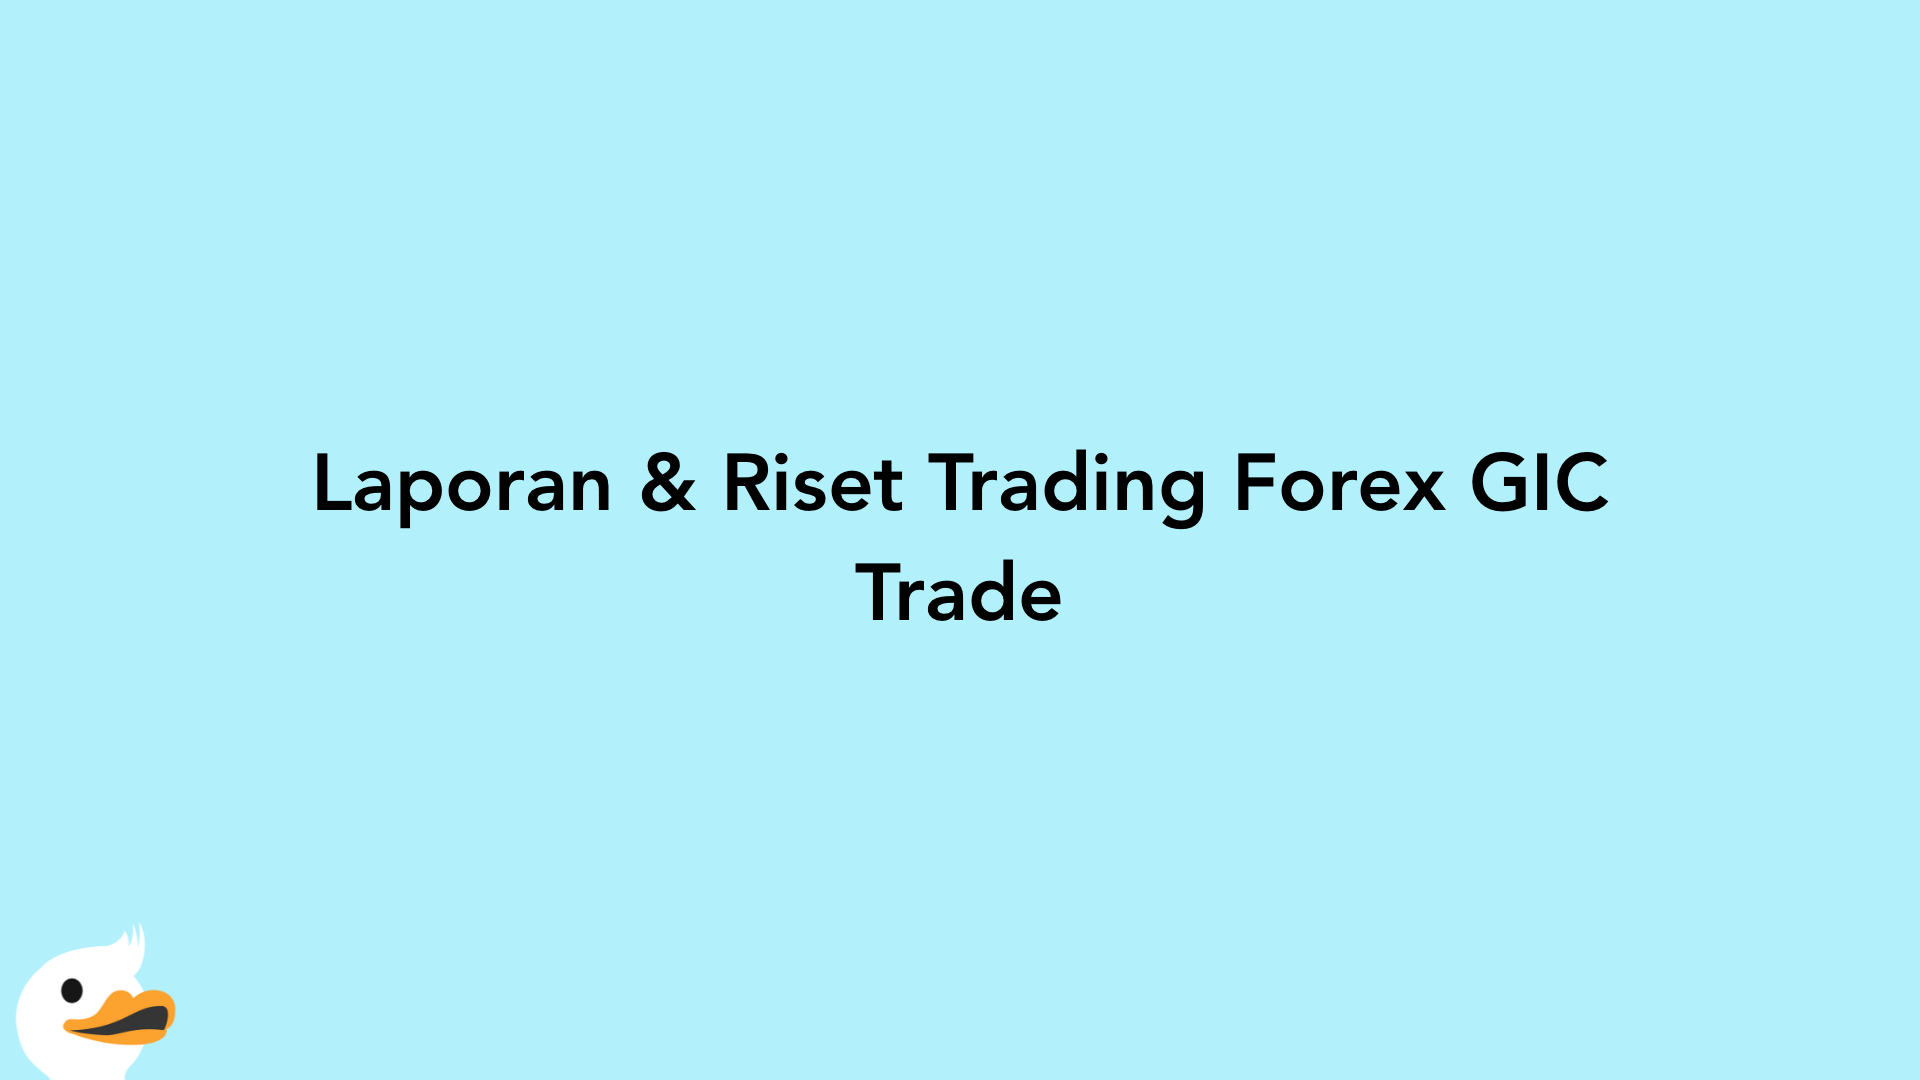 Laporan & Riset Trading Forex GIC Trade